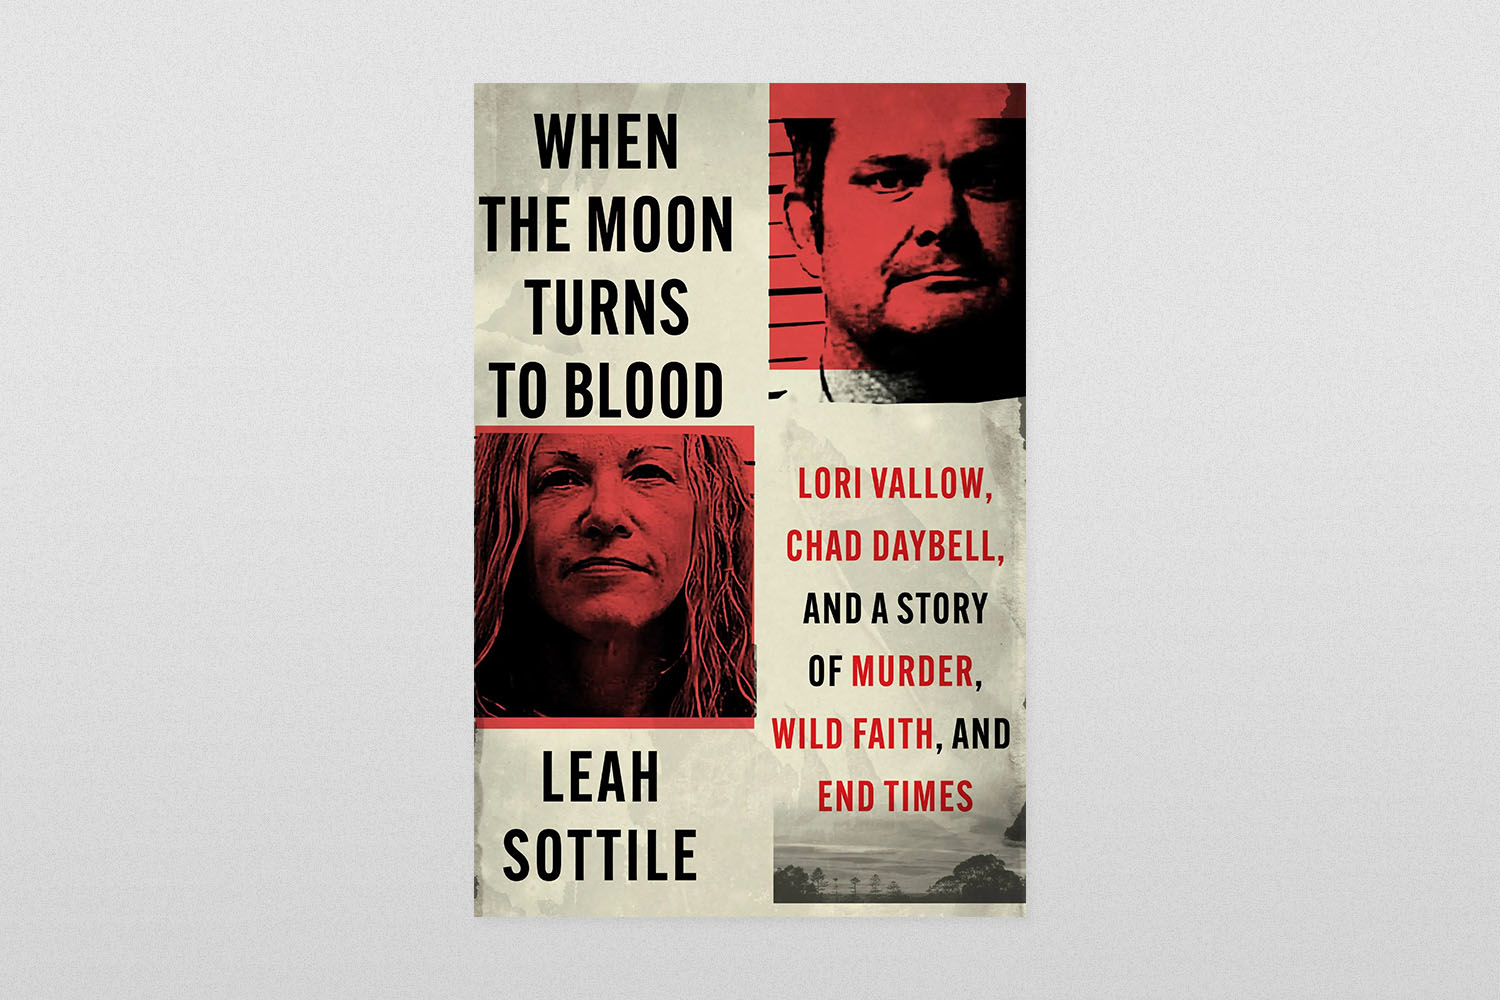 Kad se mjesec pretvori u krv - Lori Vallow, Chad Daybell i priča o ubojstvu, divljoj vjeri i posljednjim vremenima Leah Sottile